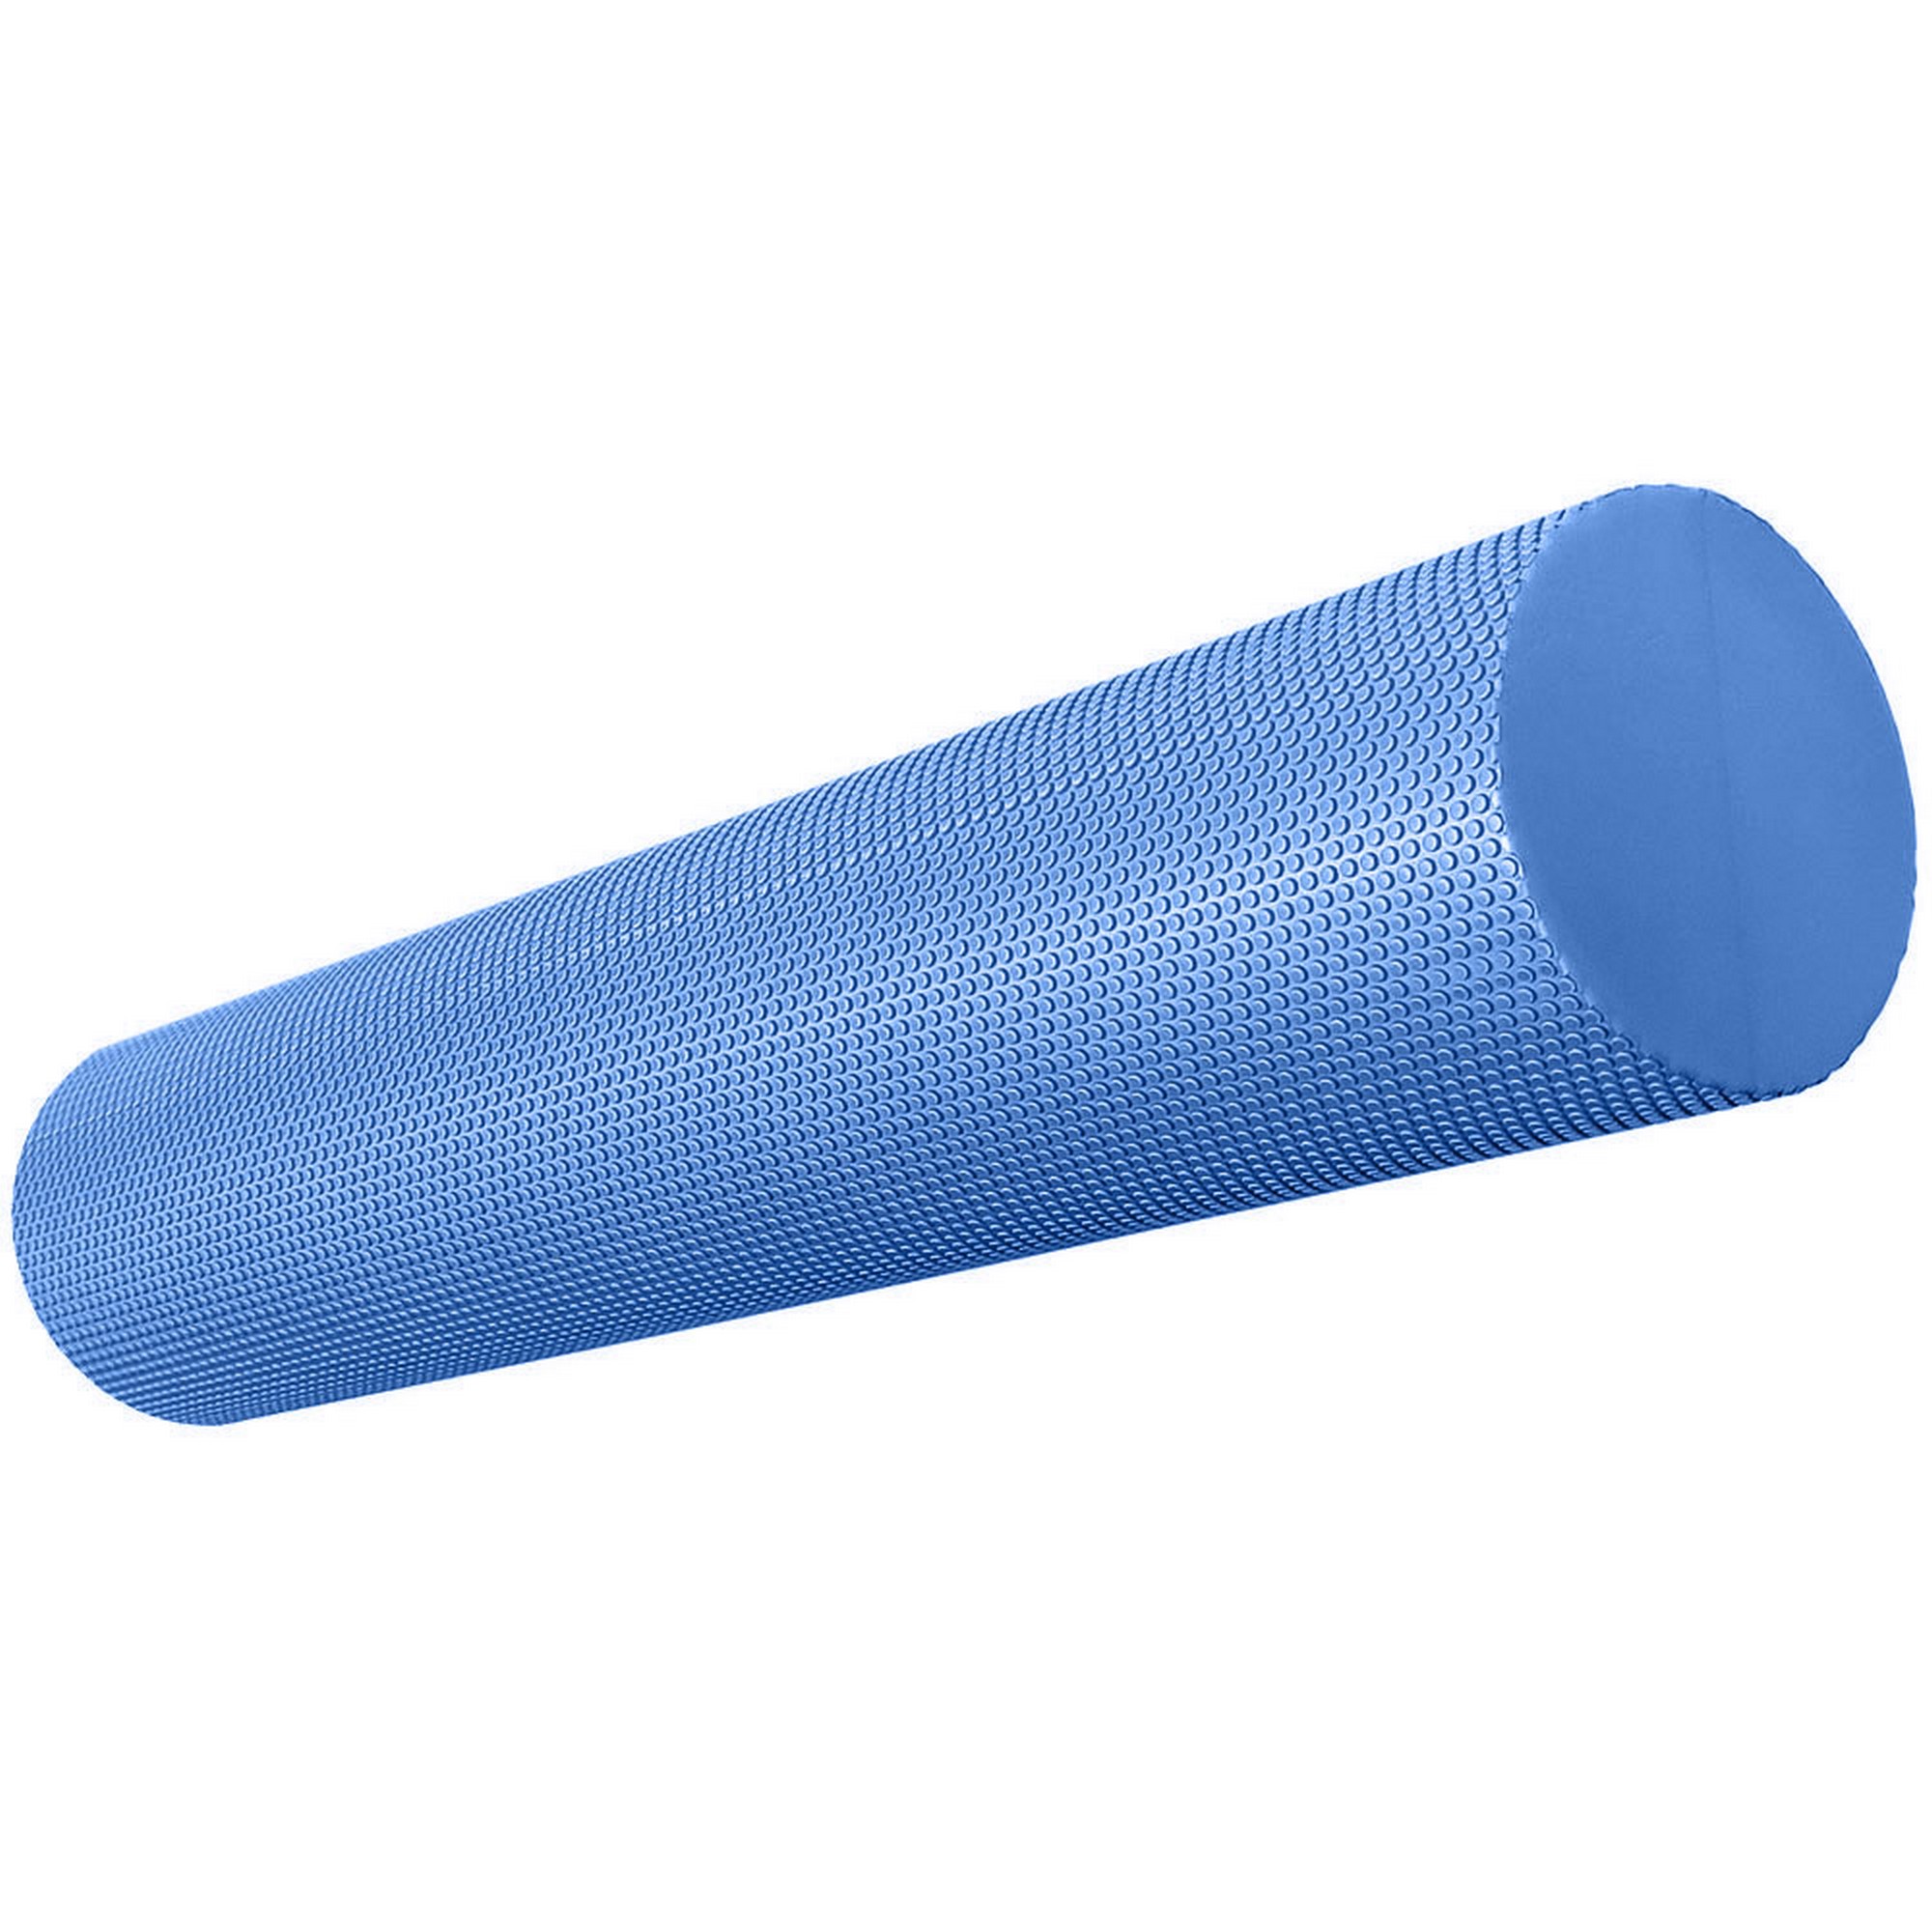 Купить Ролик для йоги полумягкий Профи 60x15см Sportex ЭВА E39105-1 синий,